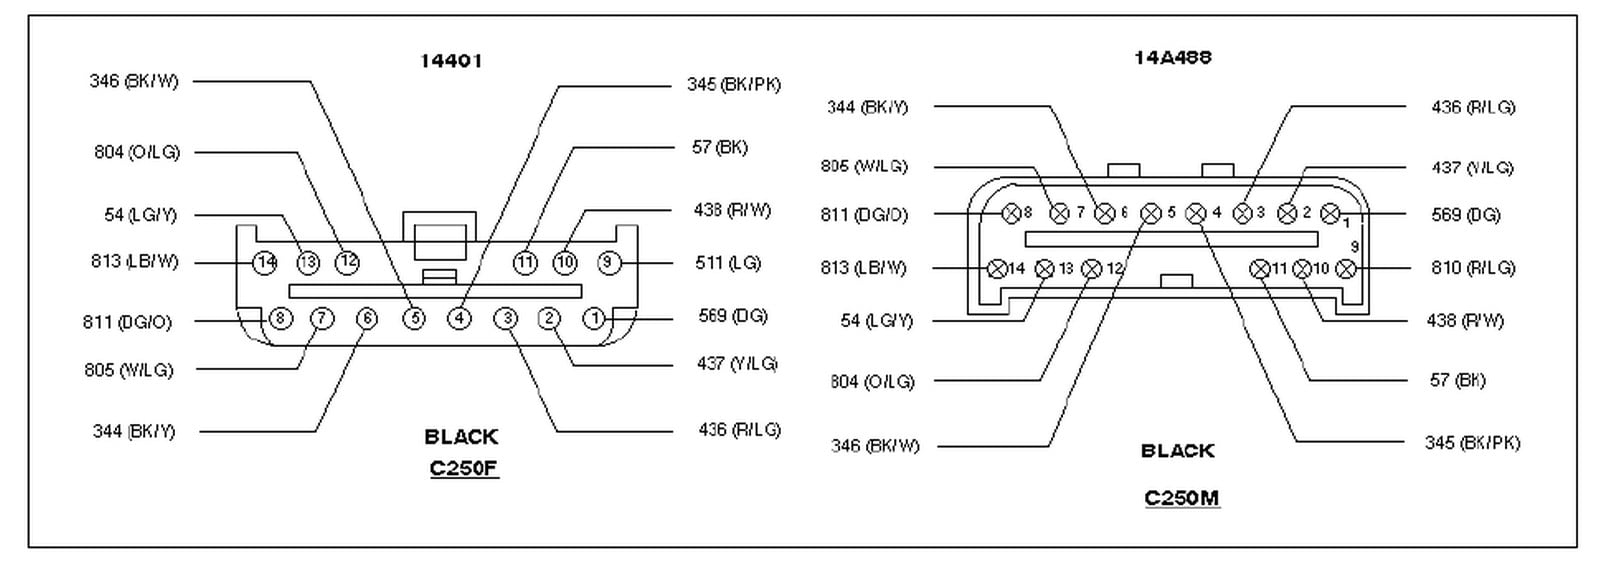 1993 mazda b2600i fuel pump wiring diagram